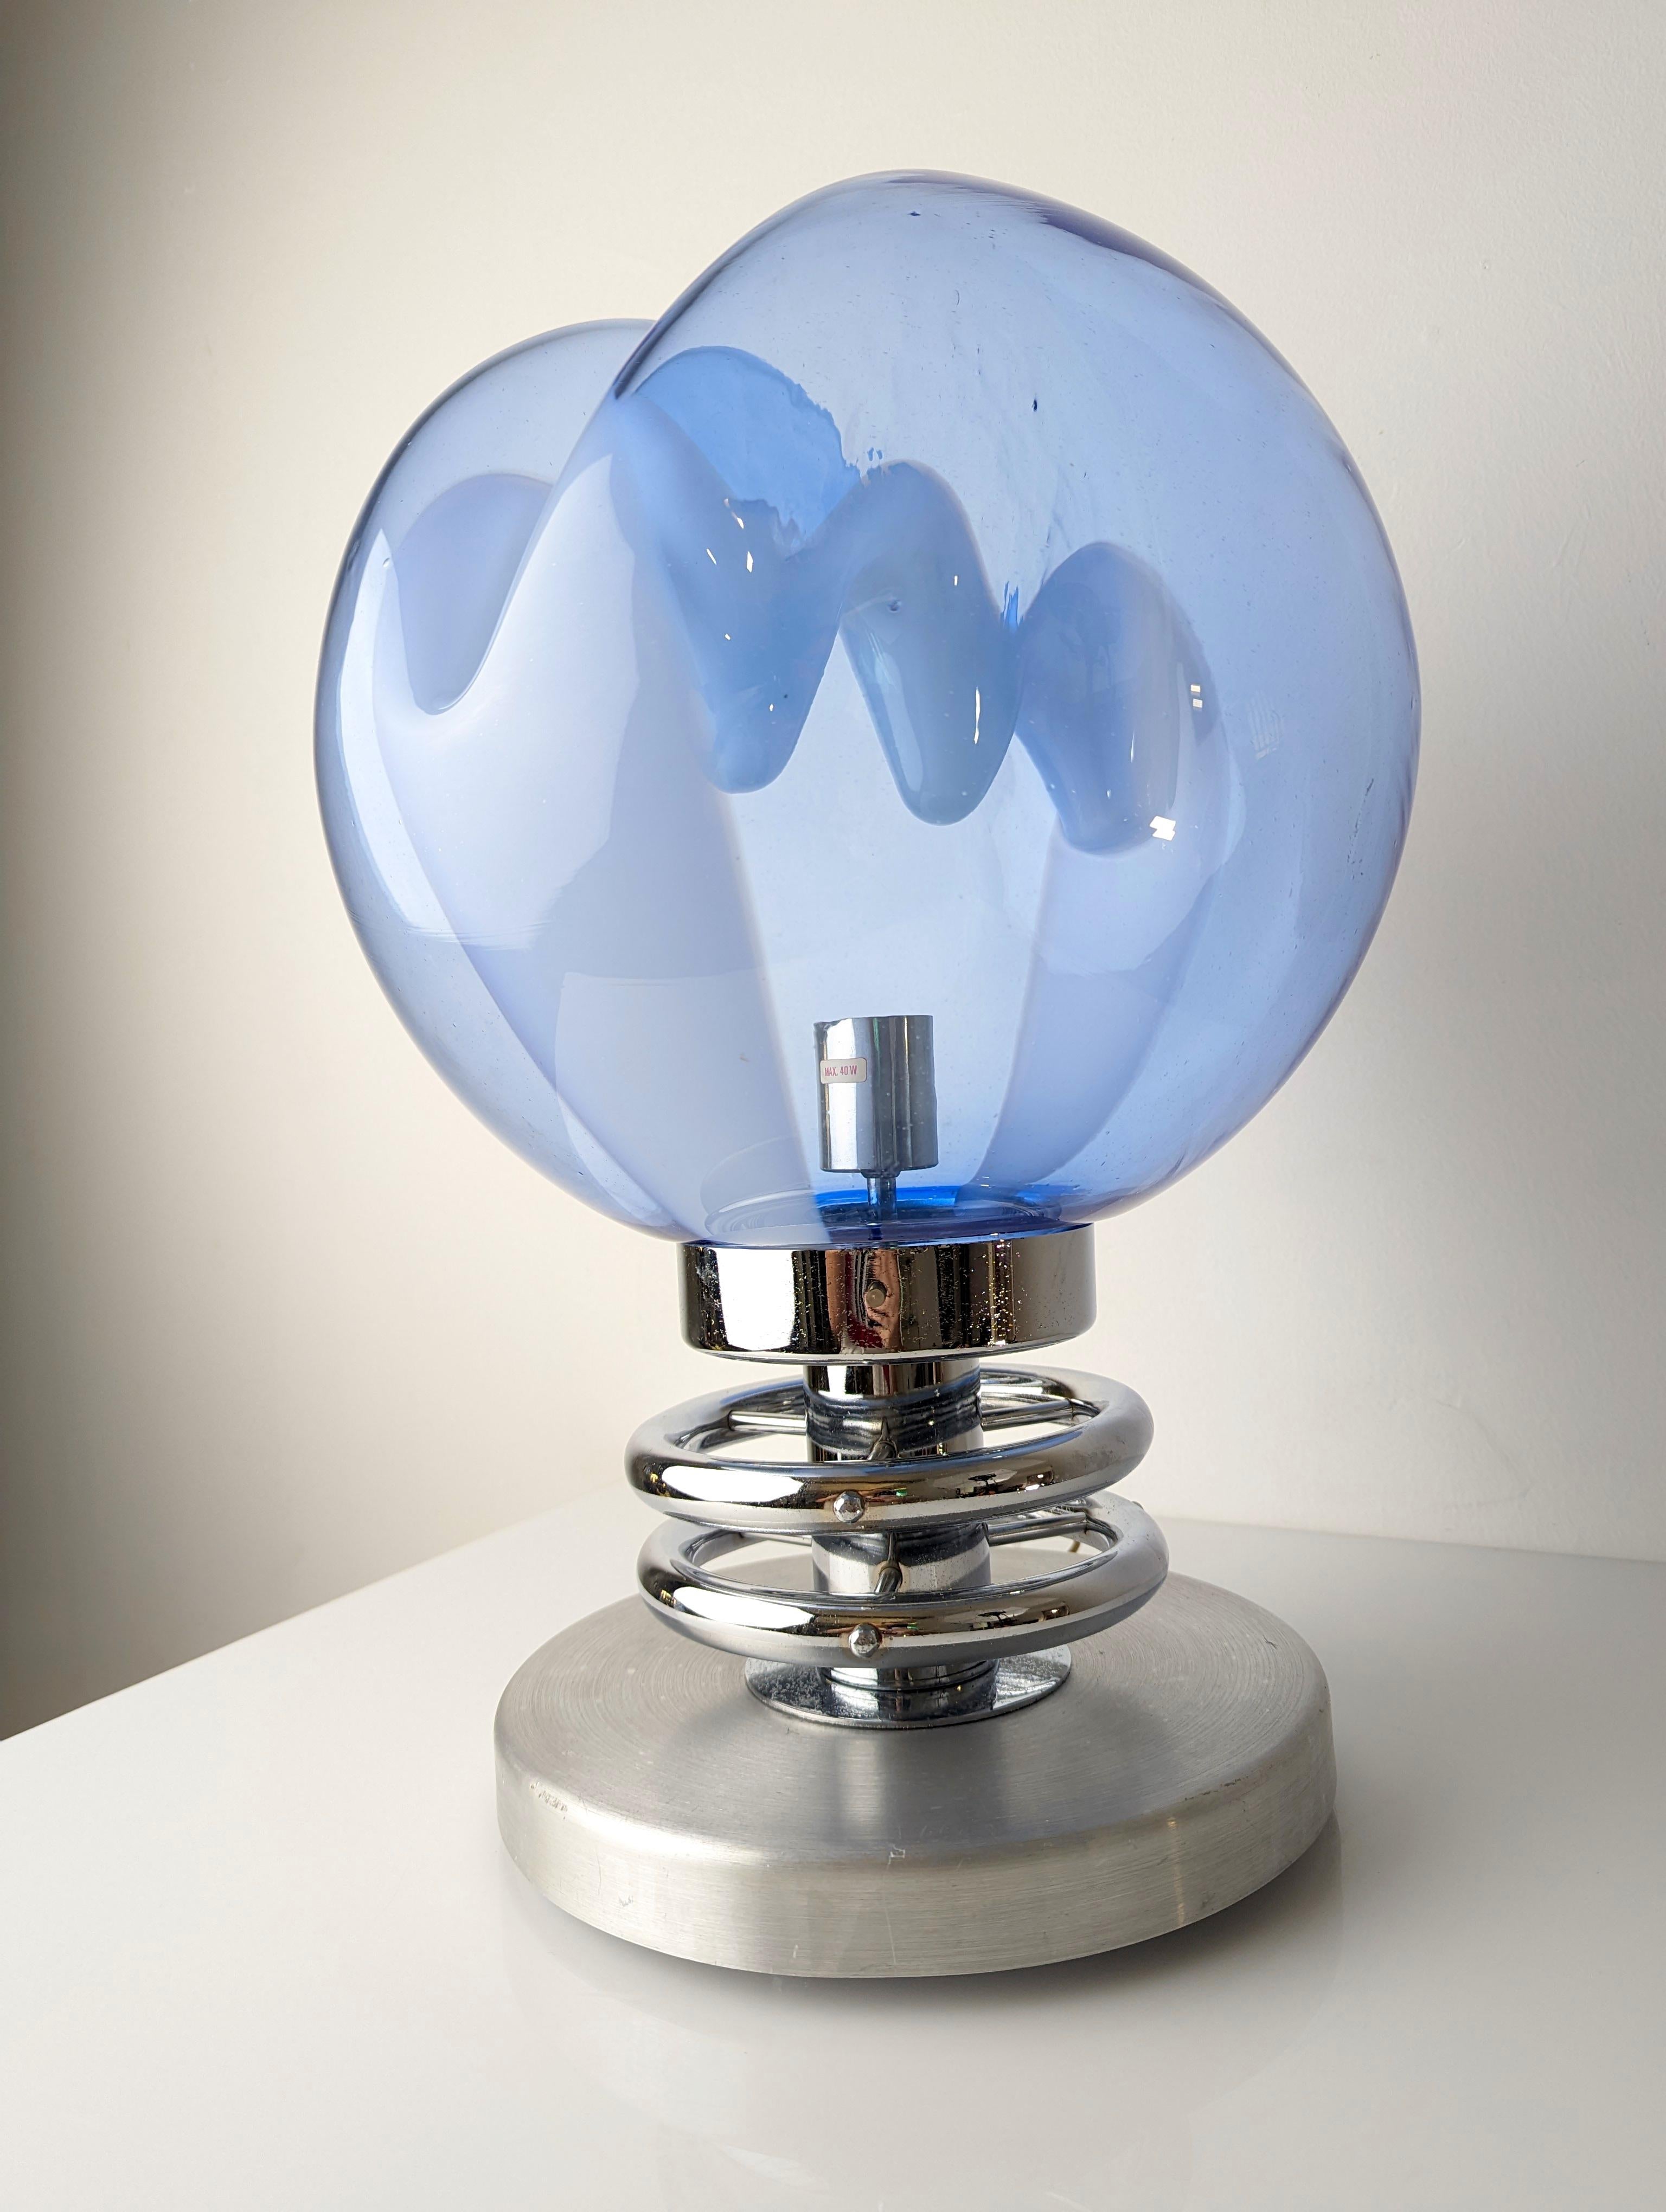 Espectacular lámpara membrana de cristal azul y blanco moldeado con base cromada de Toni Zuccheri en los años 70.